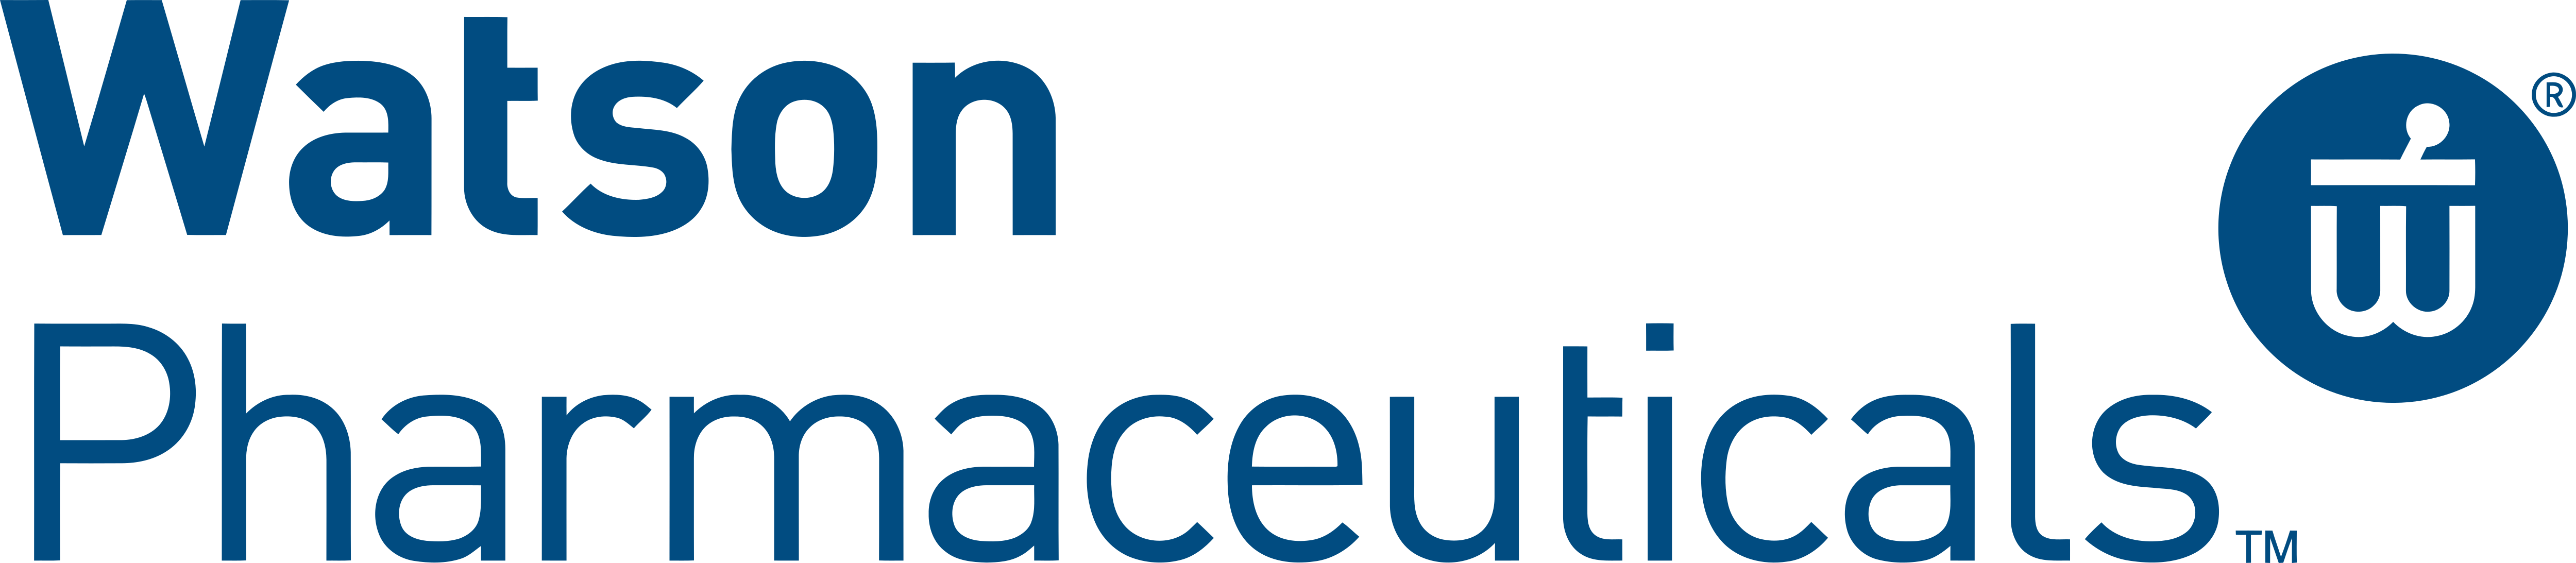 Watson Pharmaceuticals Inc Logos Download